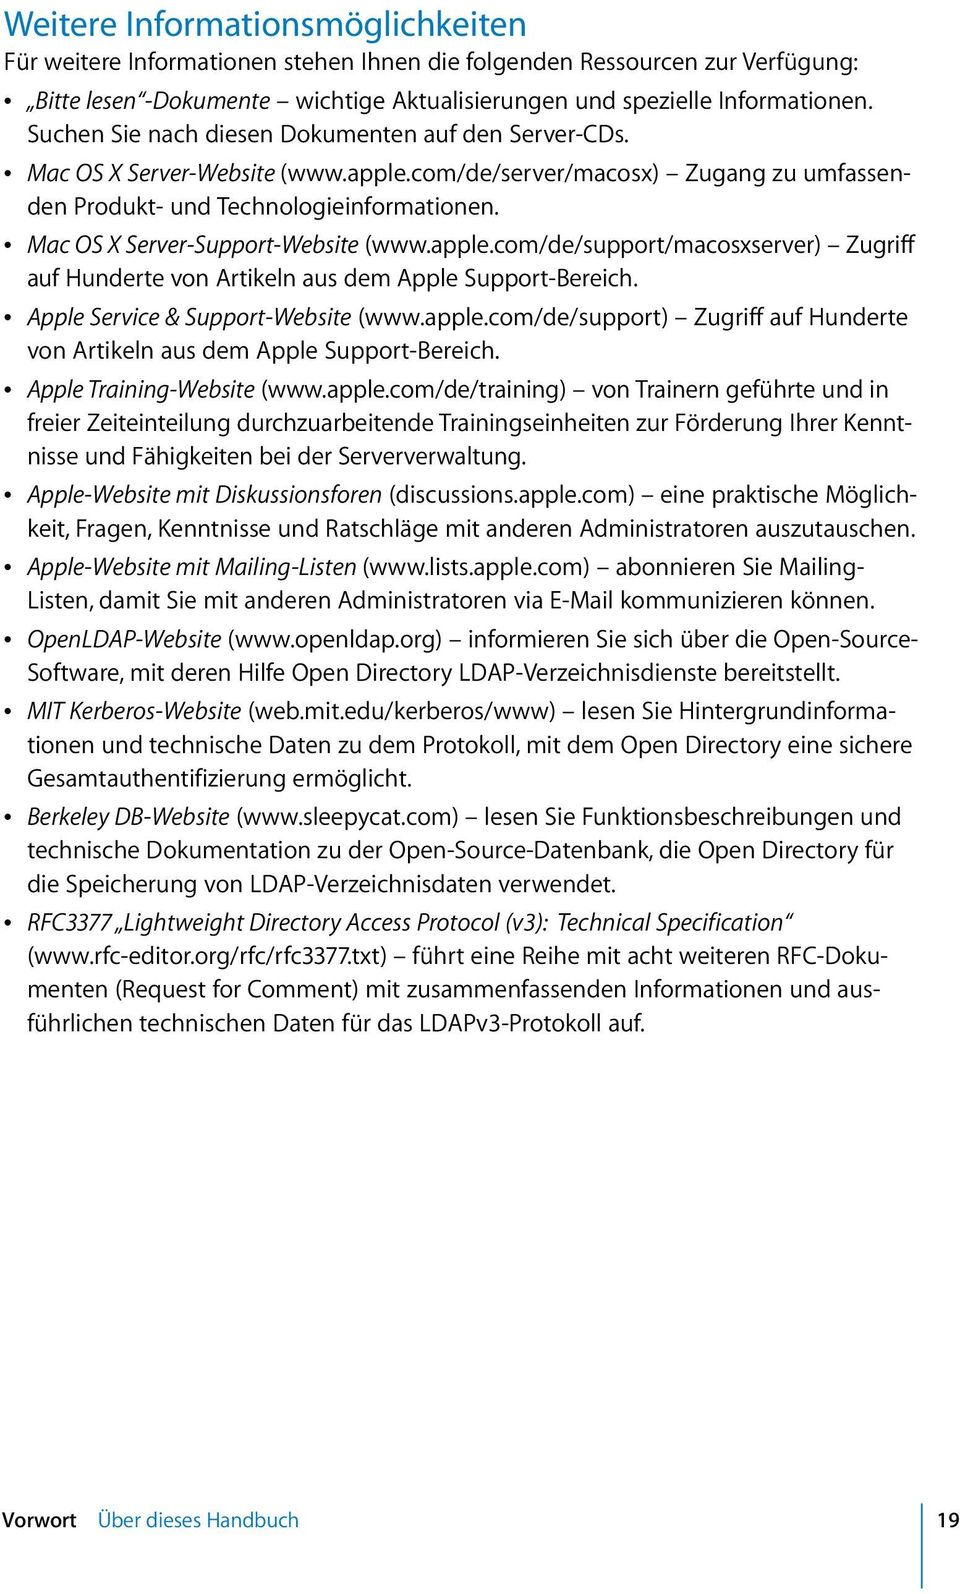 Â Mac OS X Server-Support-Website (www.apple.com/de/support/macosxserver) Zugriff auf Hunderte von Artikeln aus dem Apple Support-Bereich. Â Apple Service & Support-Website (www.apple.com/de/support) Zugriff auf Hunderte von Artikeln aus dem Apple Support-Bereich.